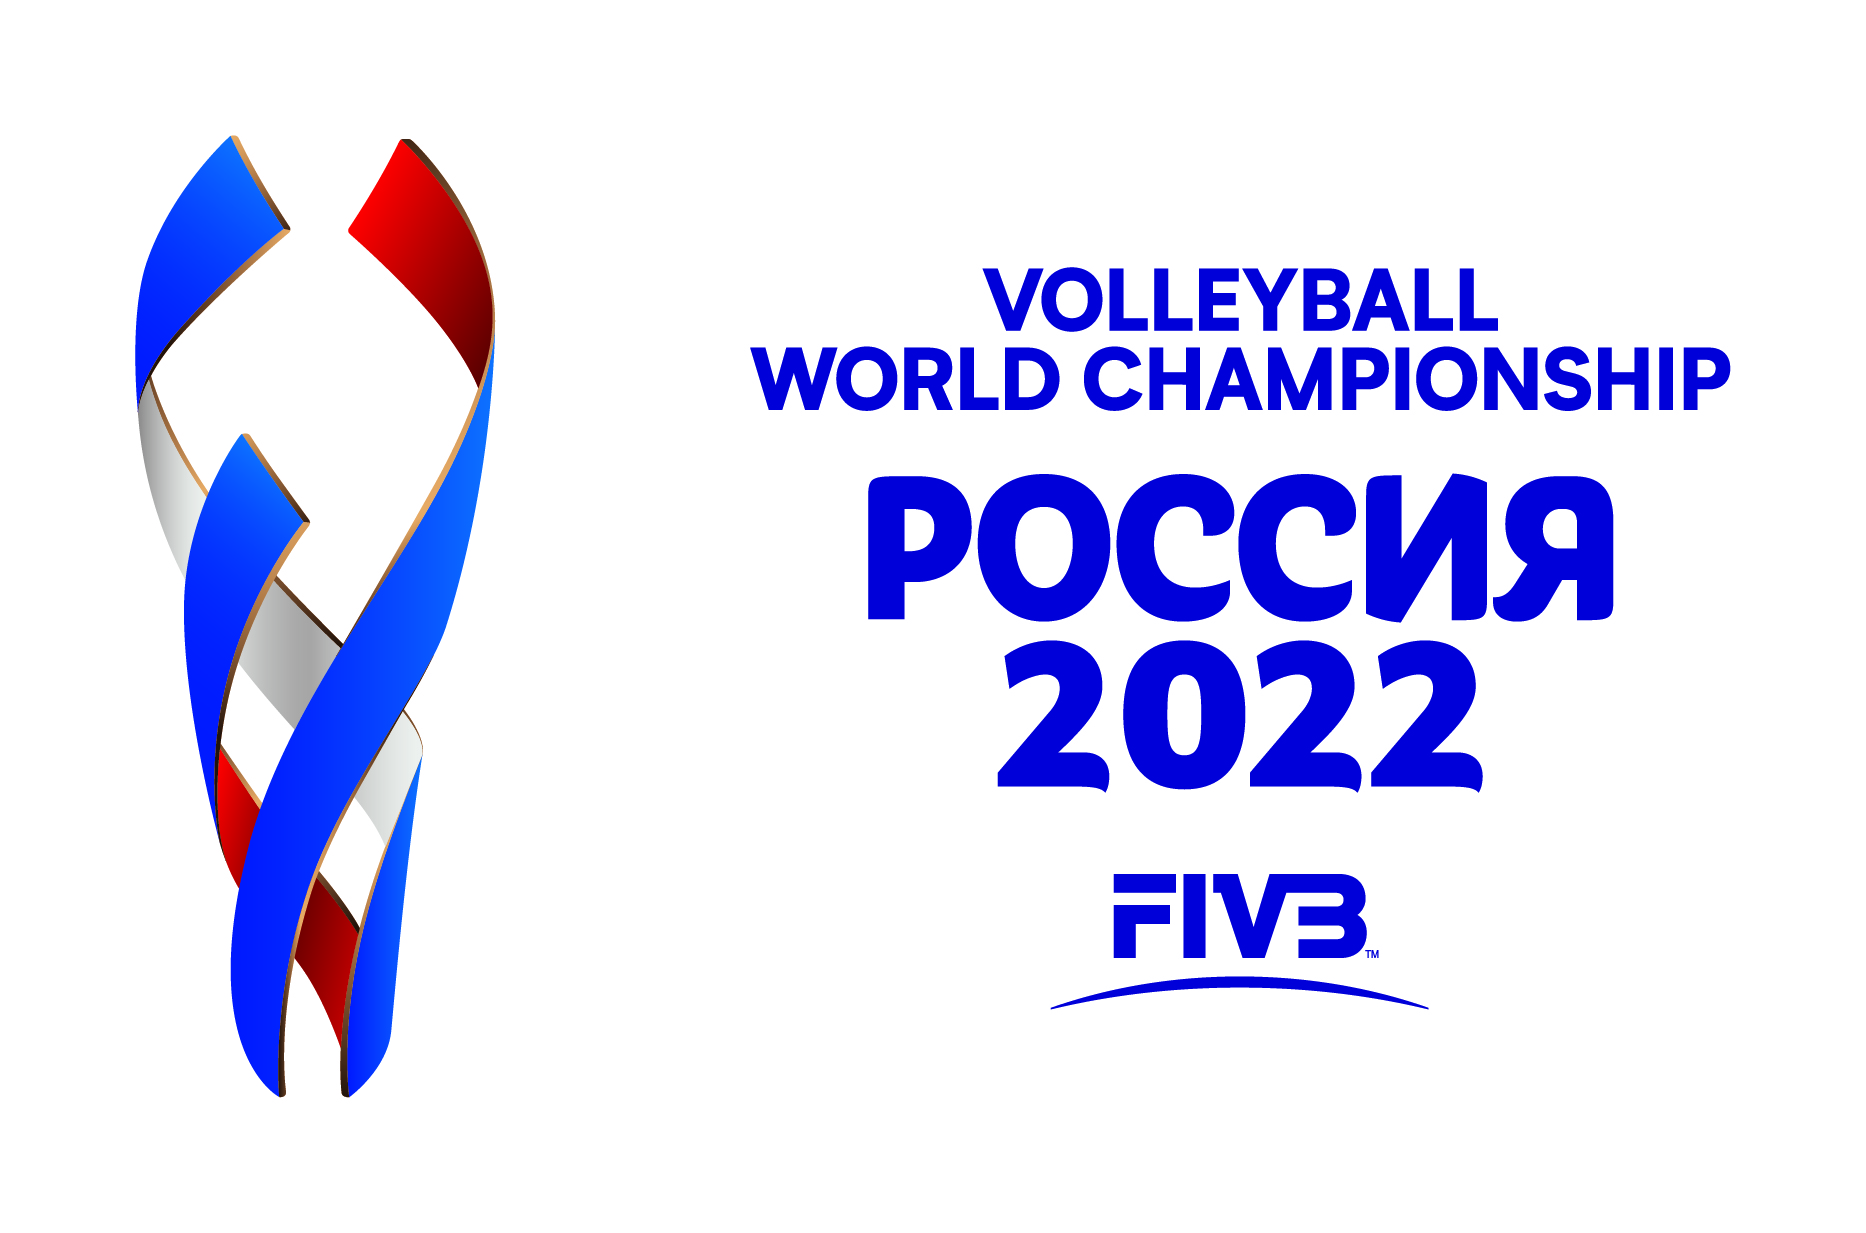 Международная федерация волейбола представила логотип чемпионата мира – 2022 для Ярославля